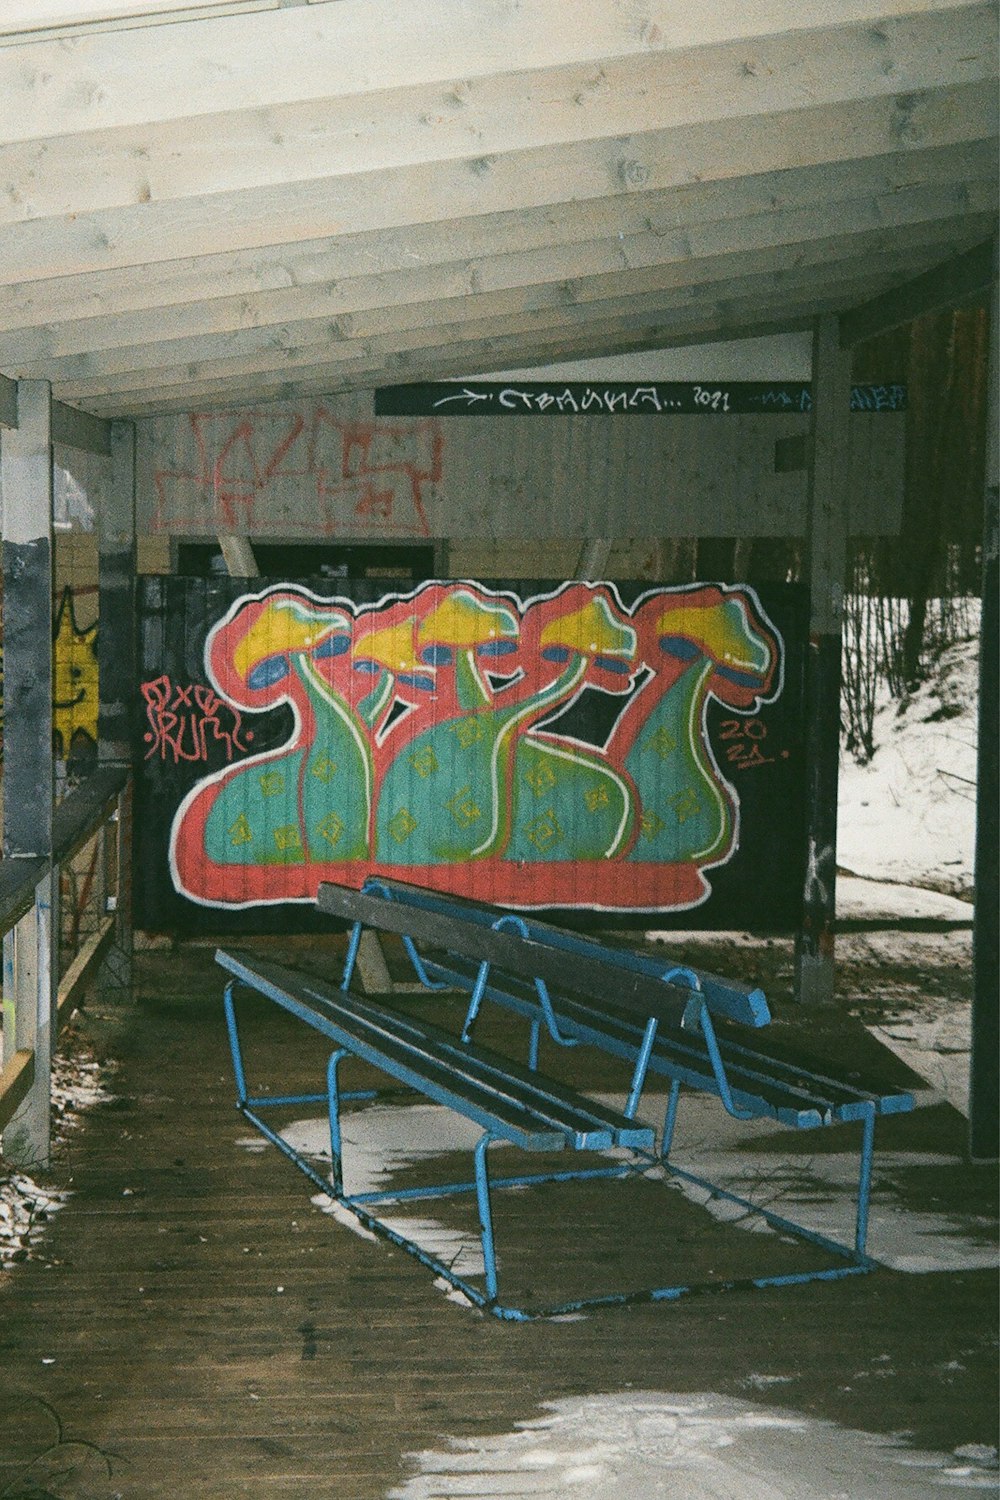 a train covered in graffiti